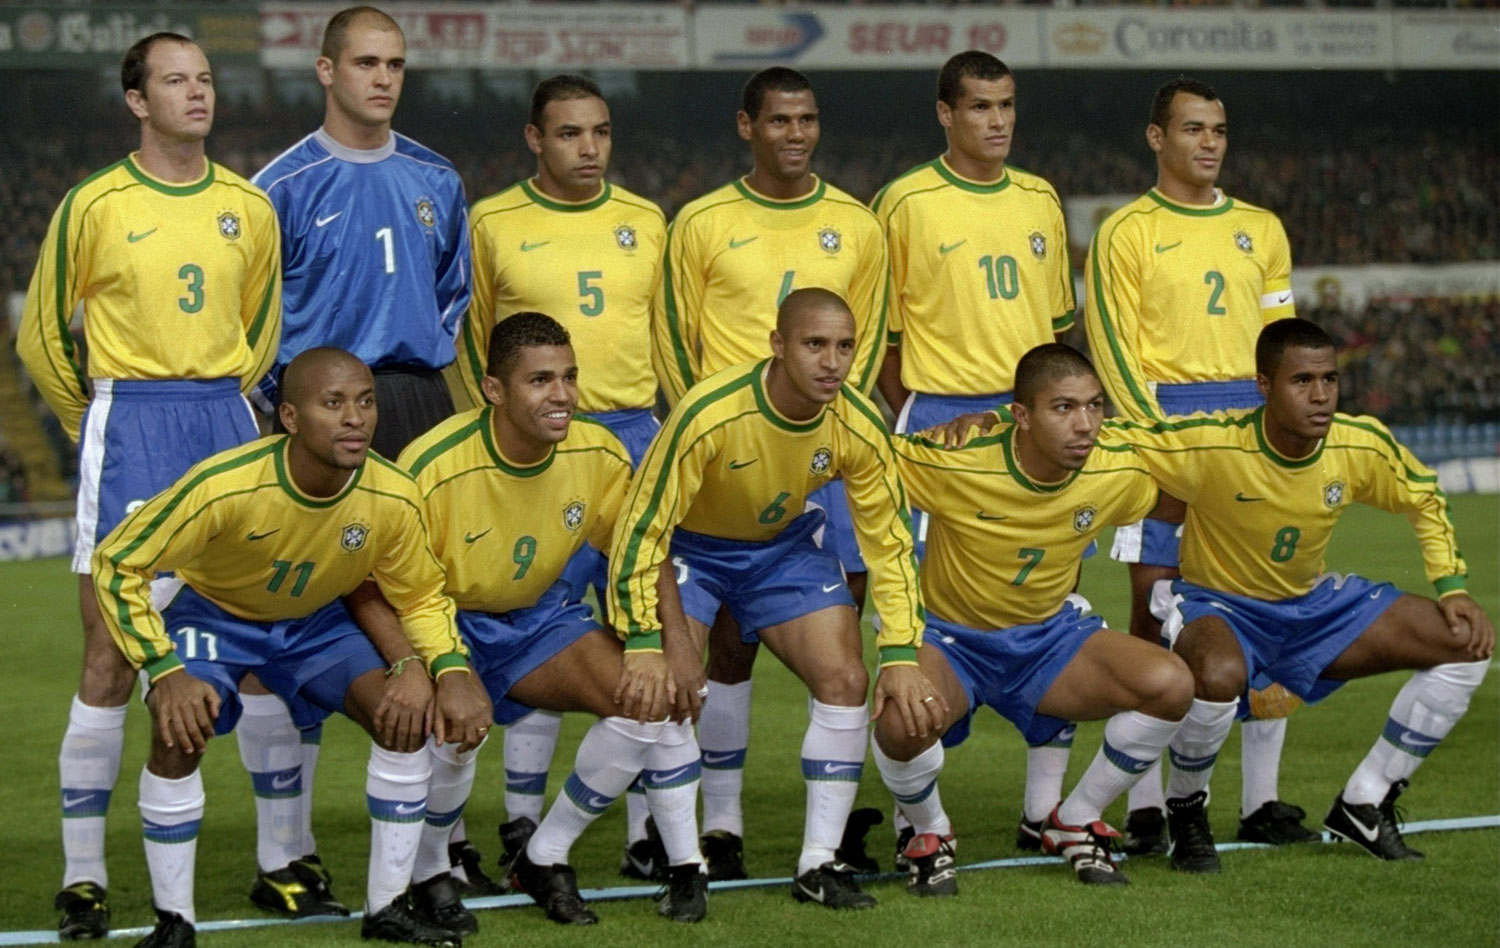 Brasil x Espanha para ficar na memória - Confederação Brasileira de Futebol